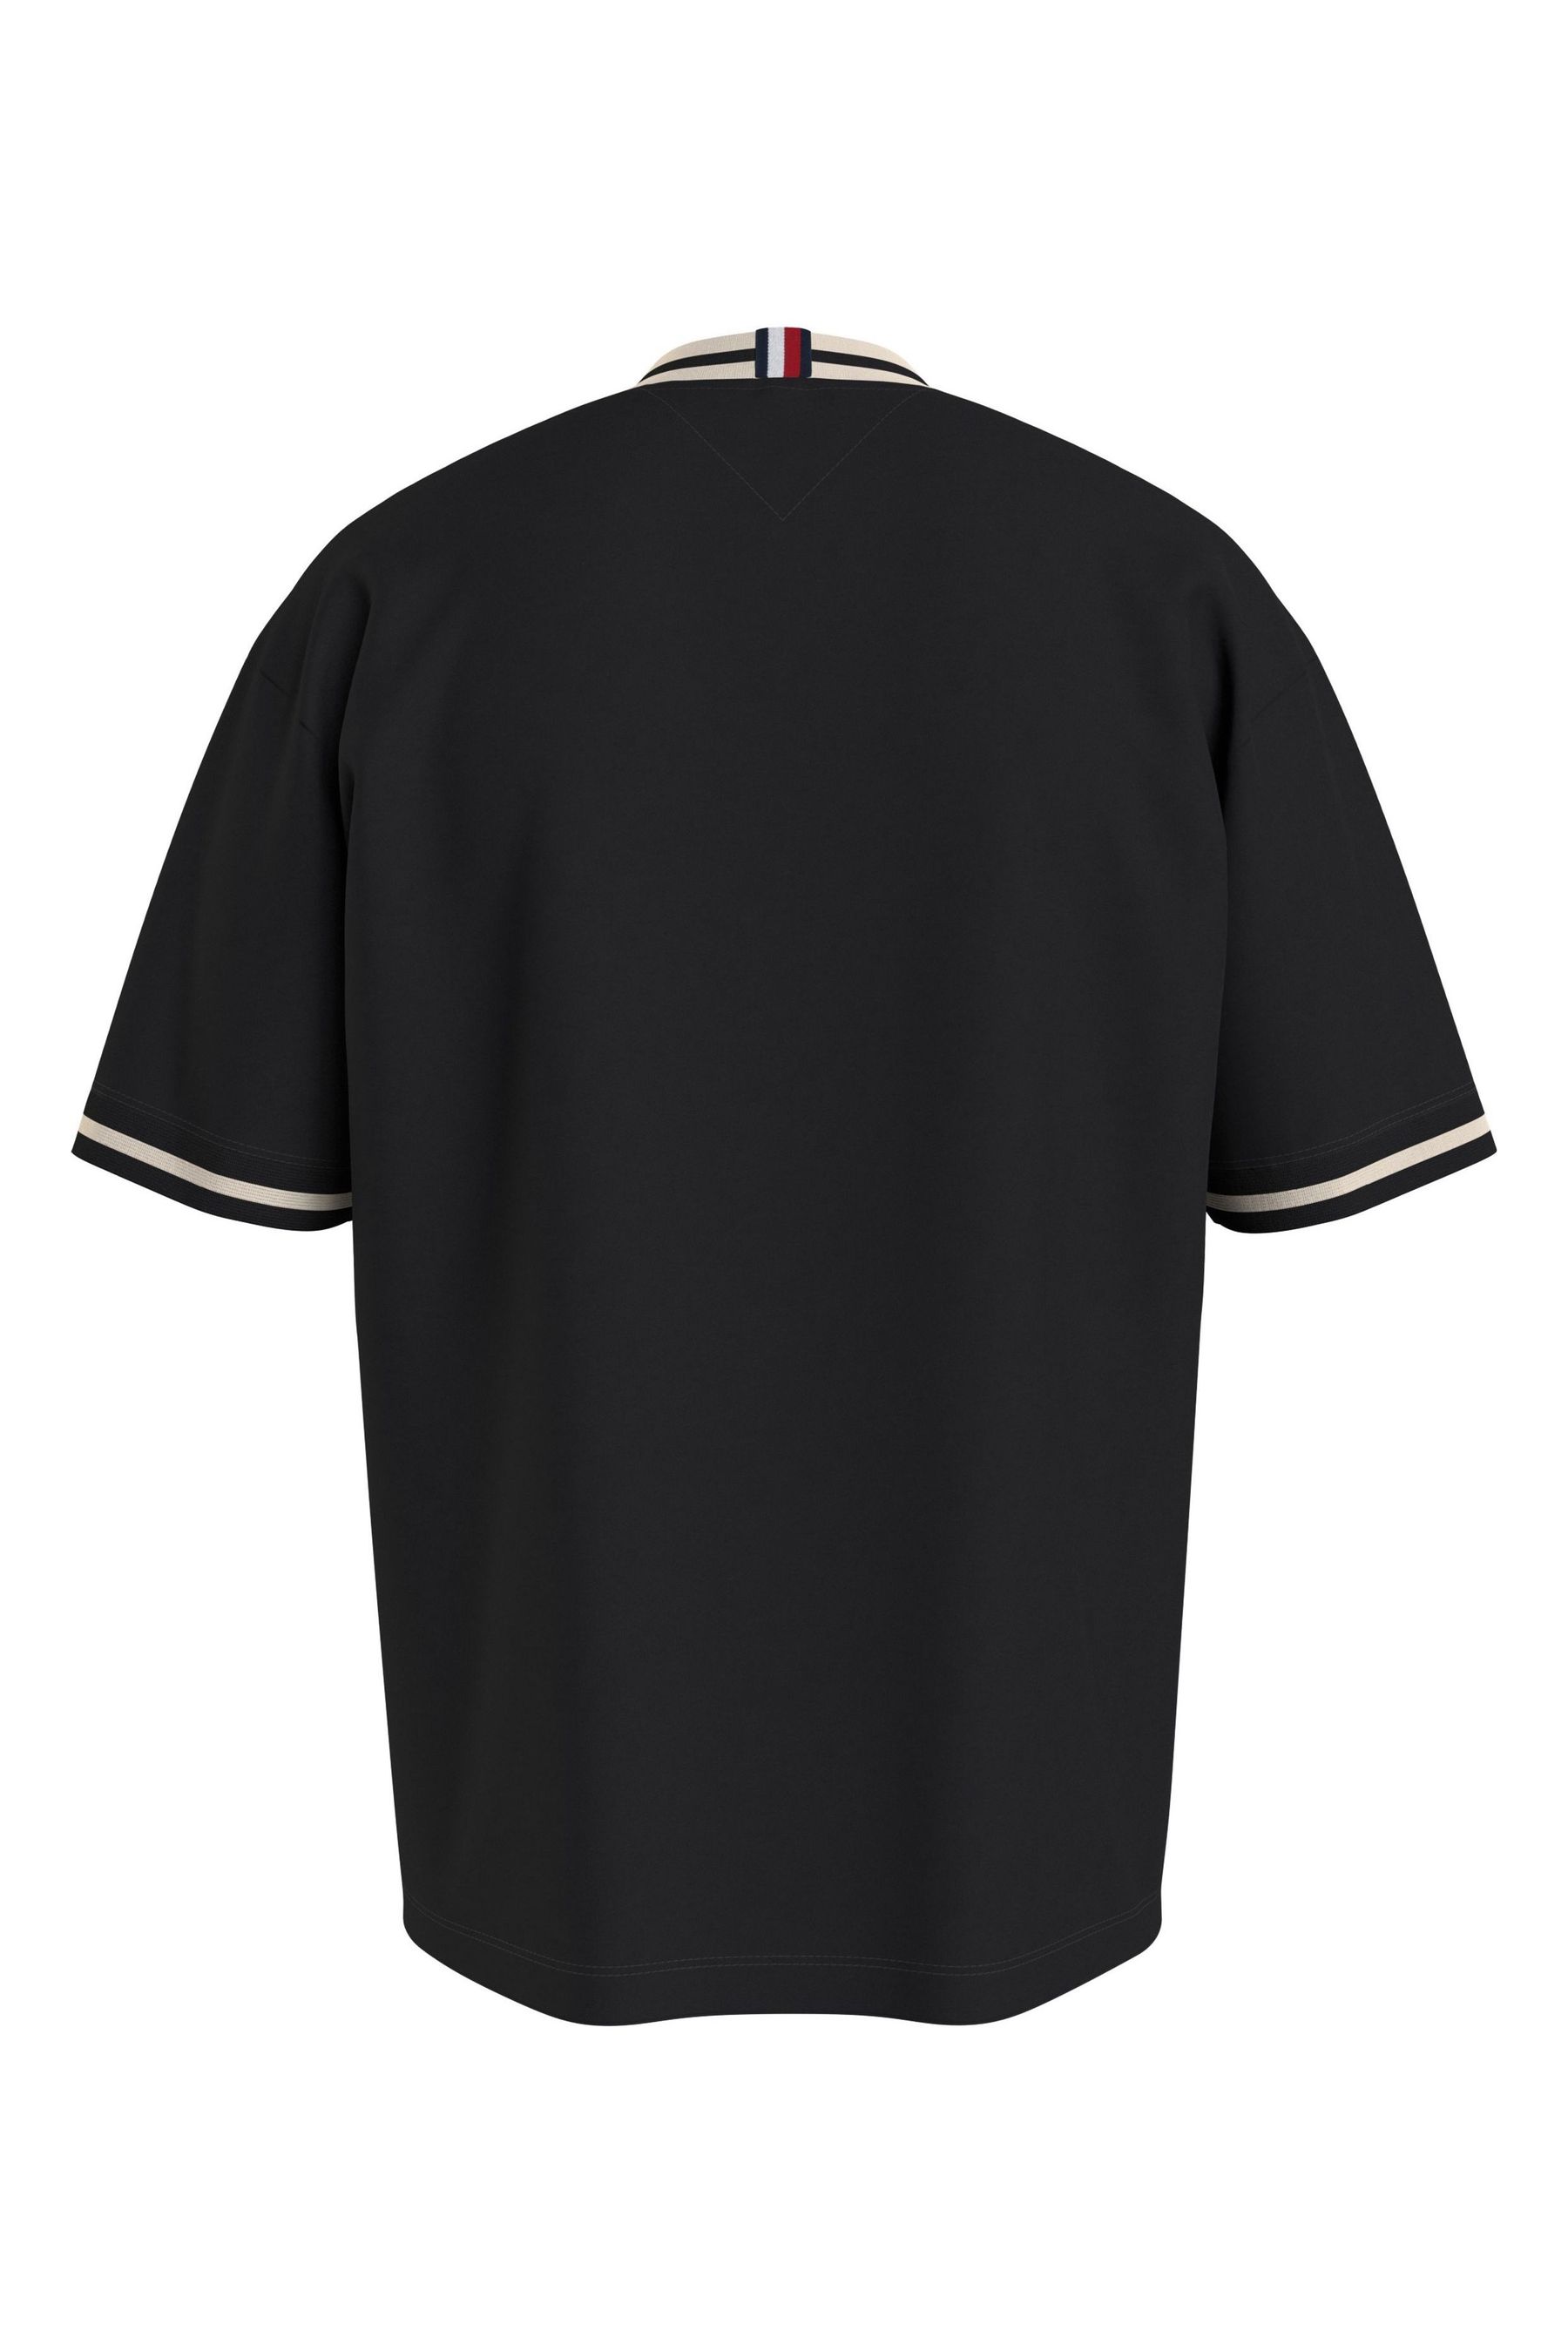 Tommy Hilfiger Laurel Tipped Black T-Shirt